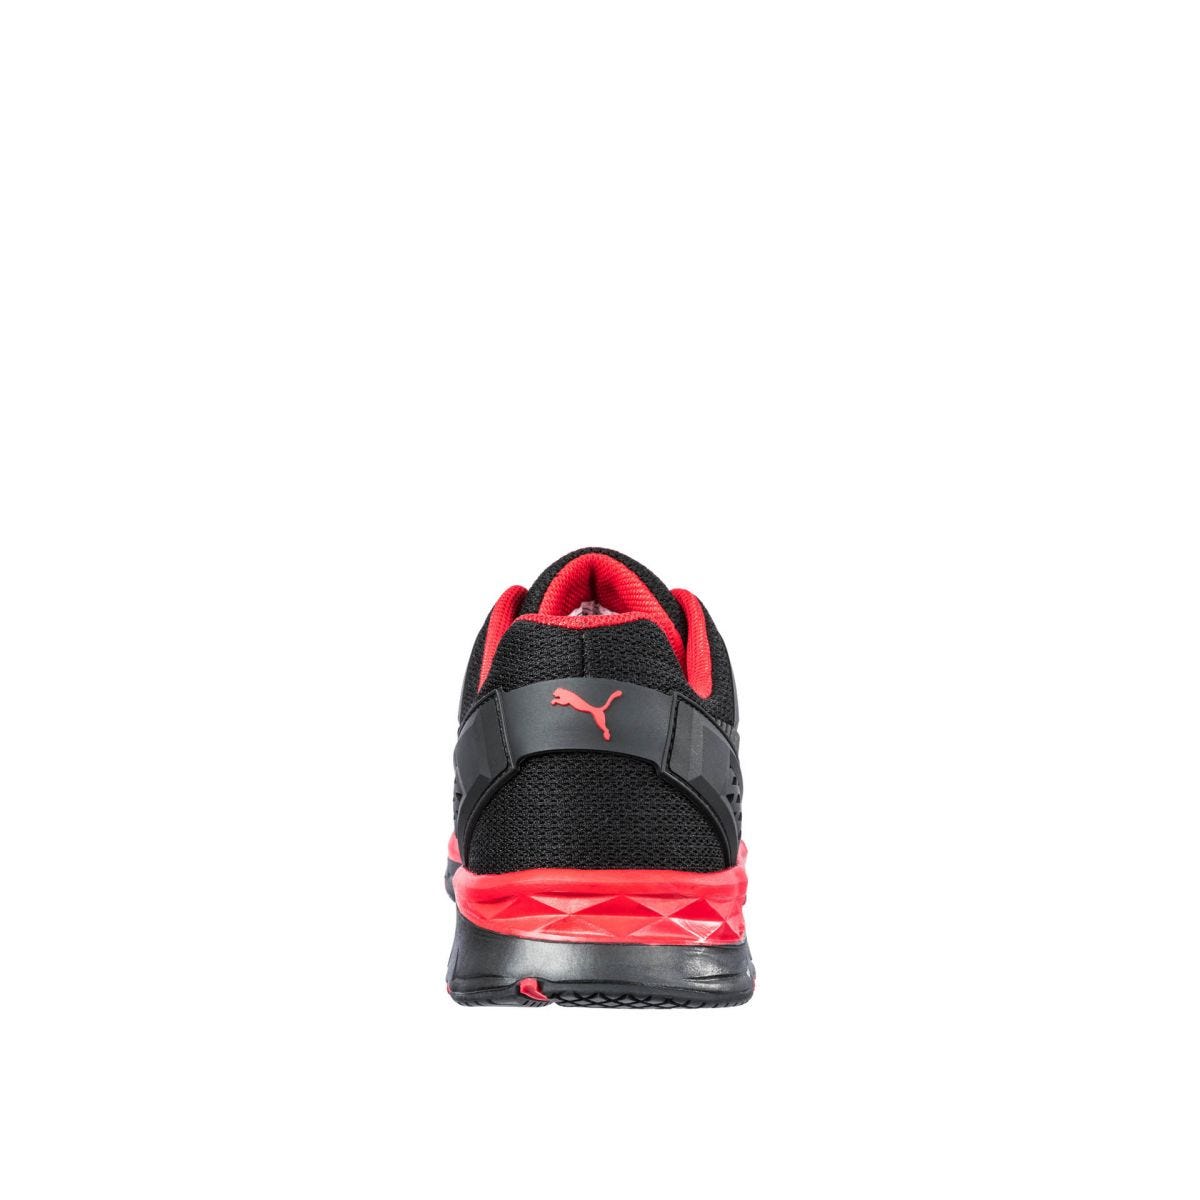 Chaussures de sécurité Fuse Motion 2.0 low S1P ESD HRO SRC rouge - Puma - Taille 48 1